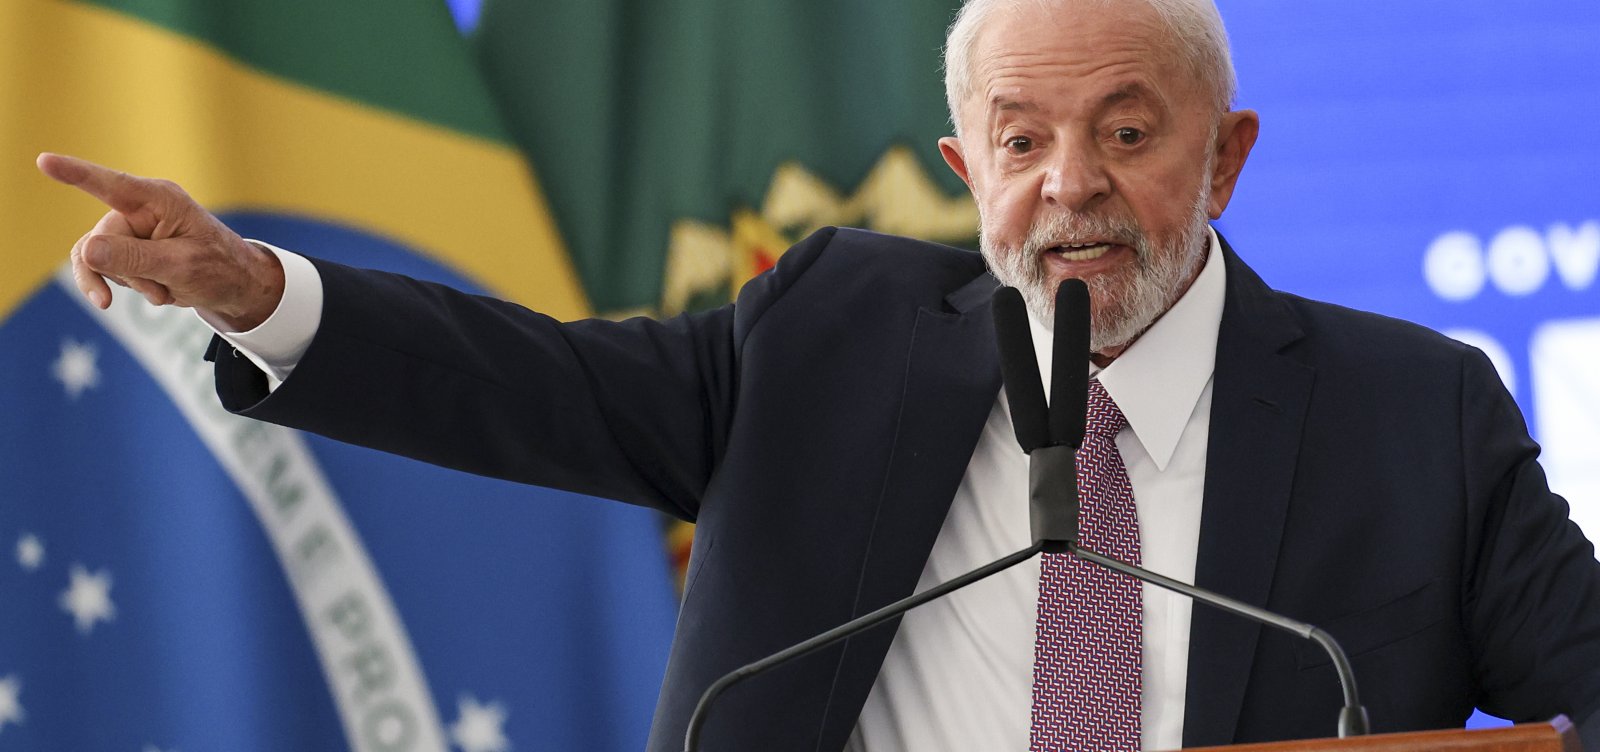 Lula diz que Brasil não deve “depender eternamente” de Bolsa Família